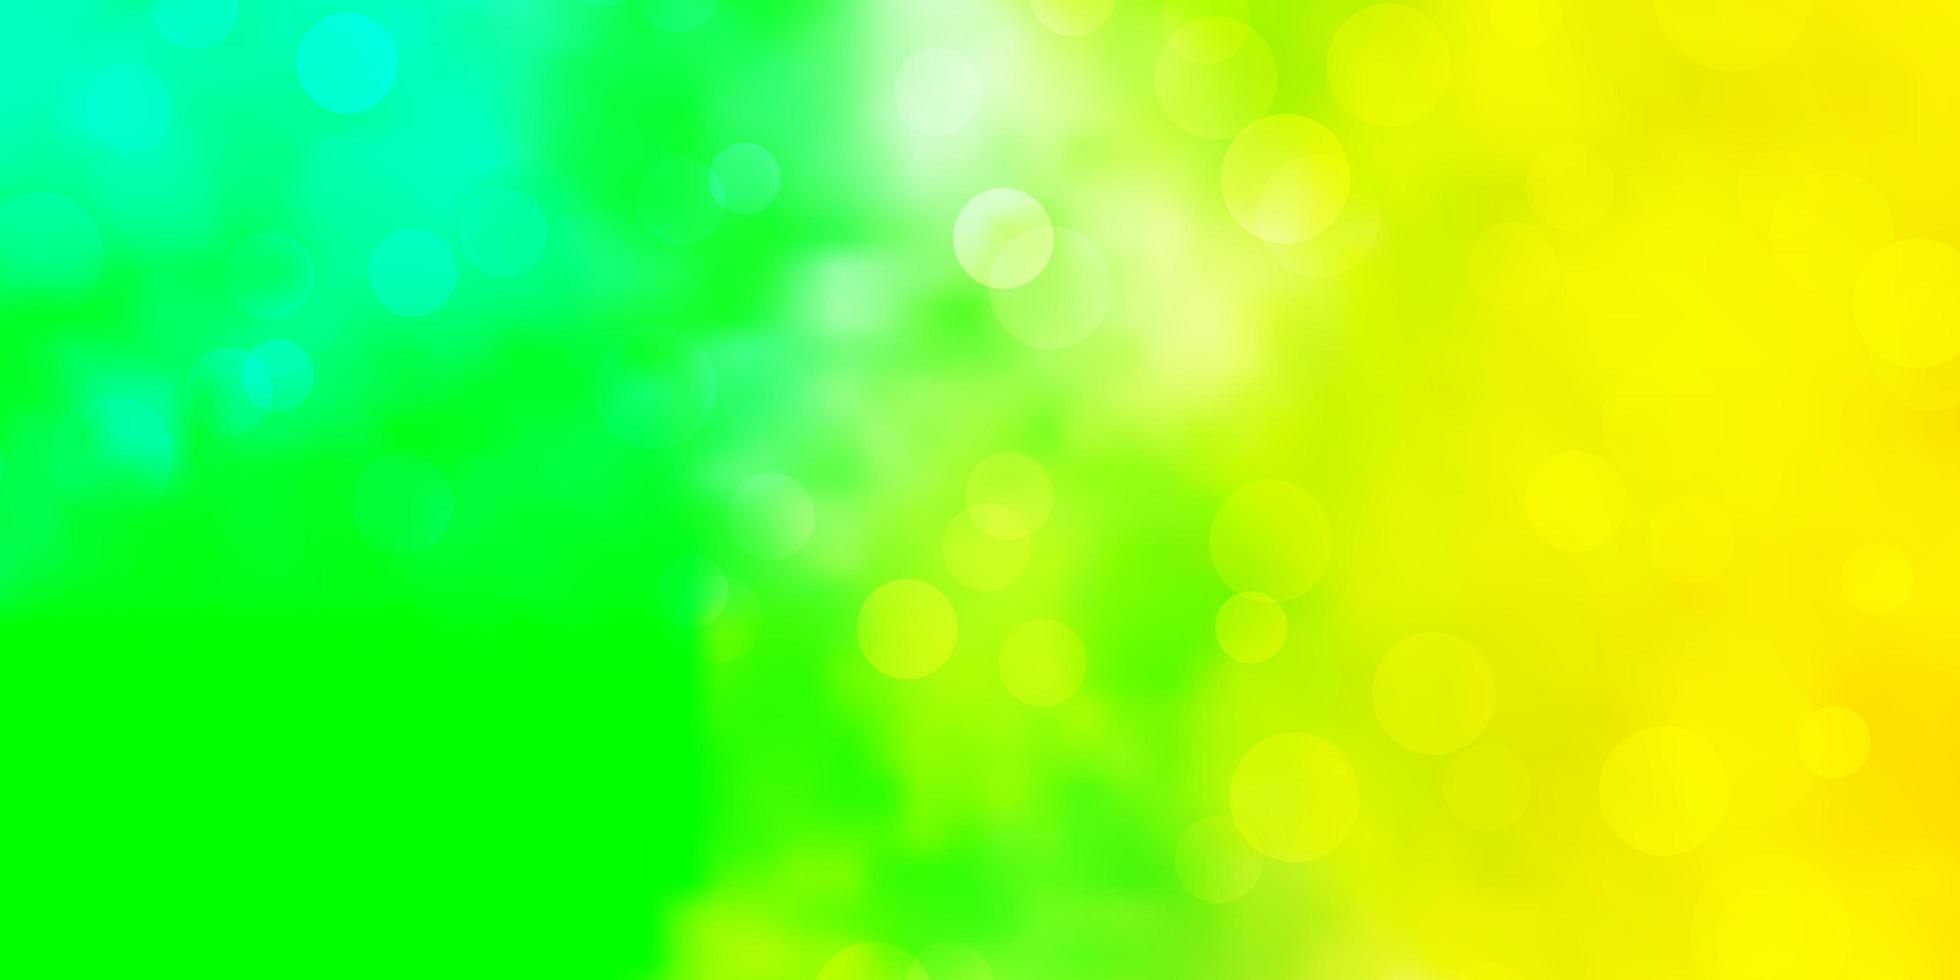 ljusgrön, gul vektorlayout med cirklar. vektor